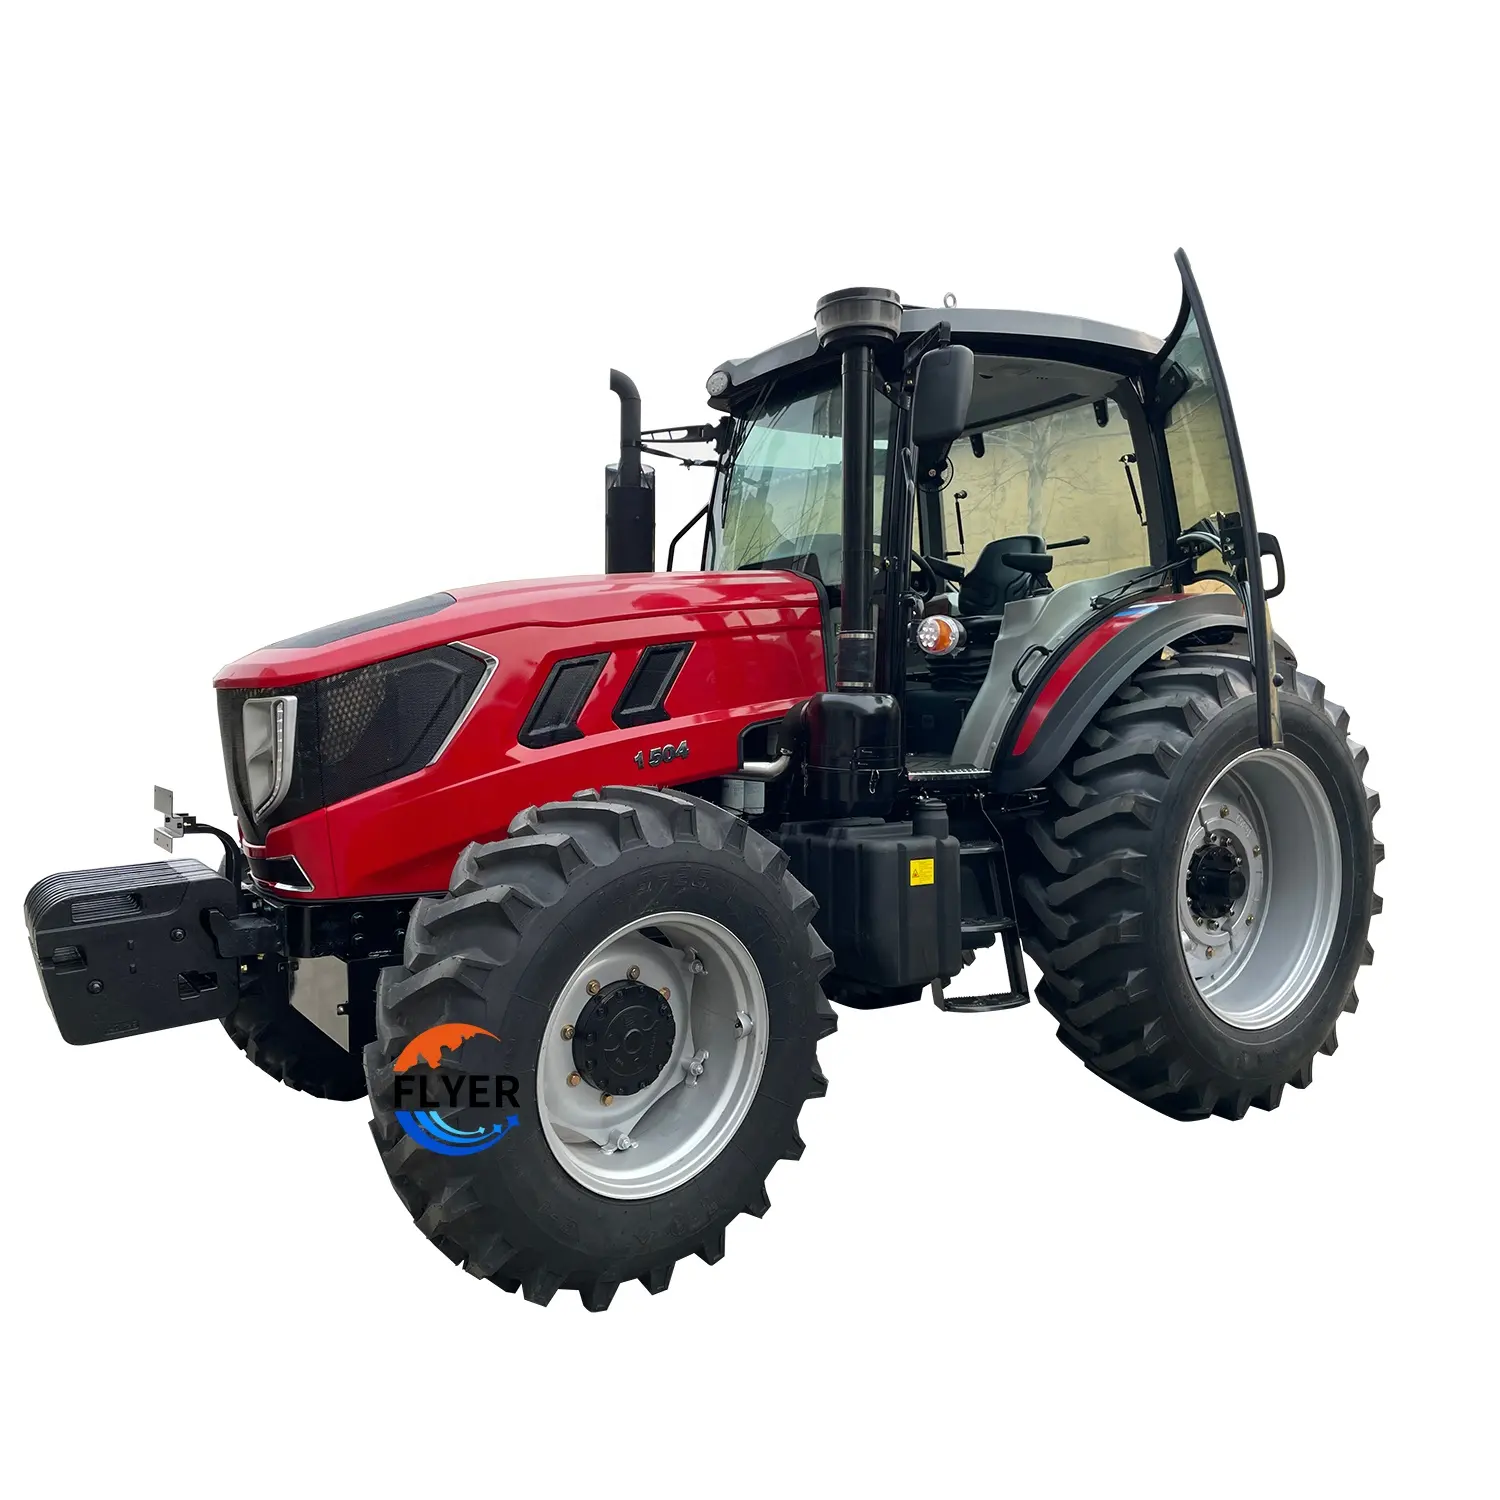 Goede Prijs Slijtvaste Band Rode Kleur 4X4 4wd 150pk Farm Tractor Met Zonnescherm Te Koop